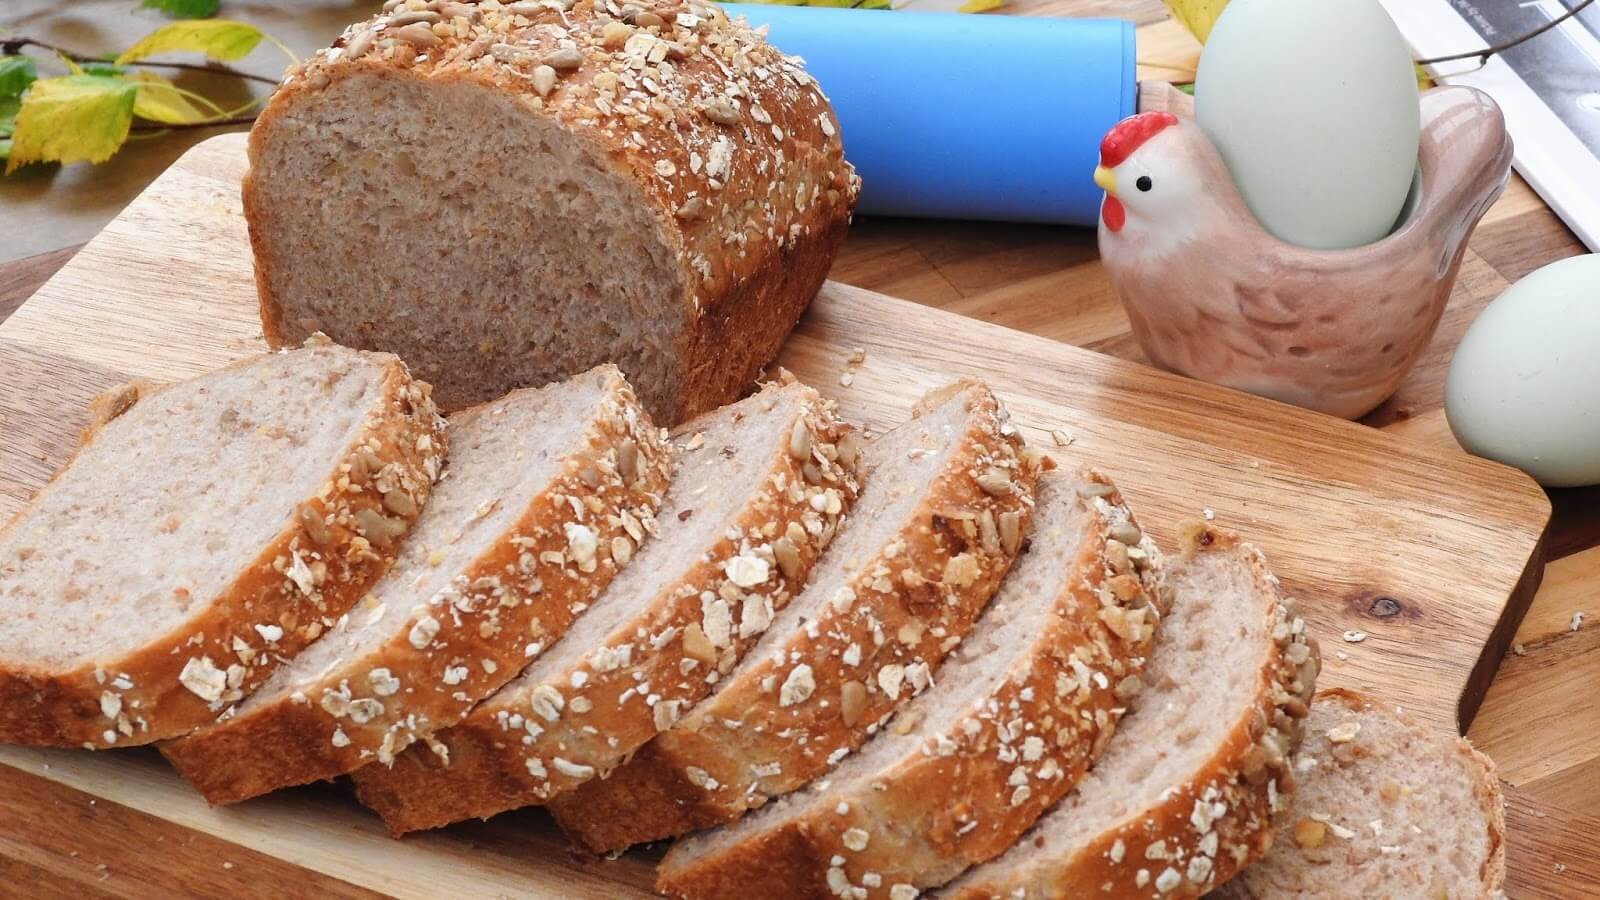 در مورد نان تست اگر این نان به طور کامل از آرد گندم کامل تهیه شده باشد، می تواند نان خوبی برای کاهش وزن باشد